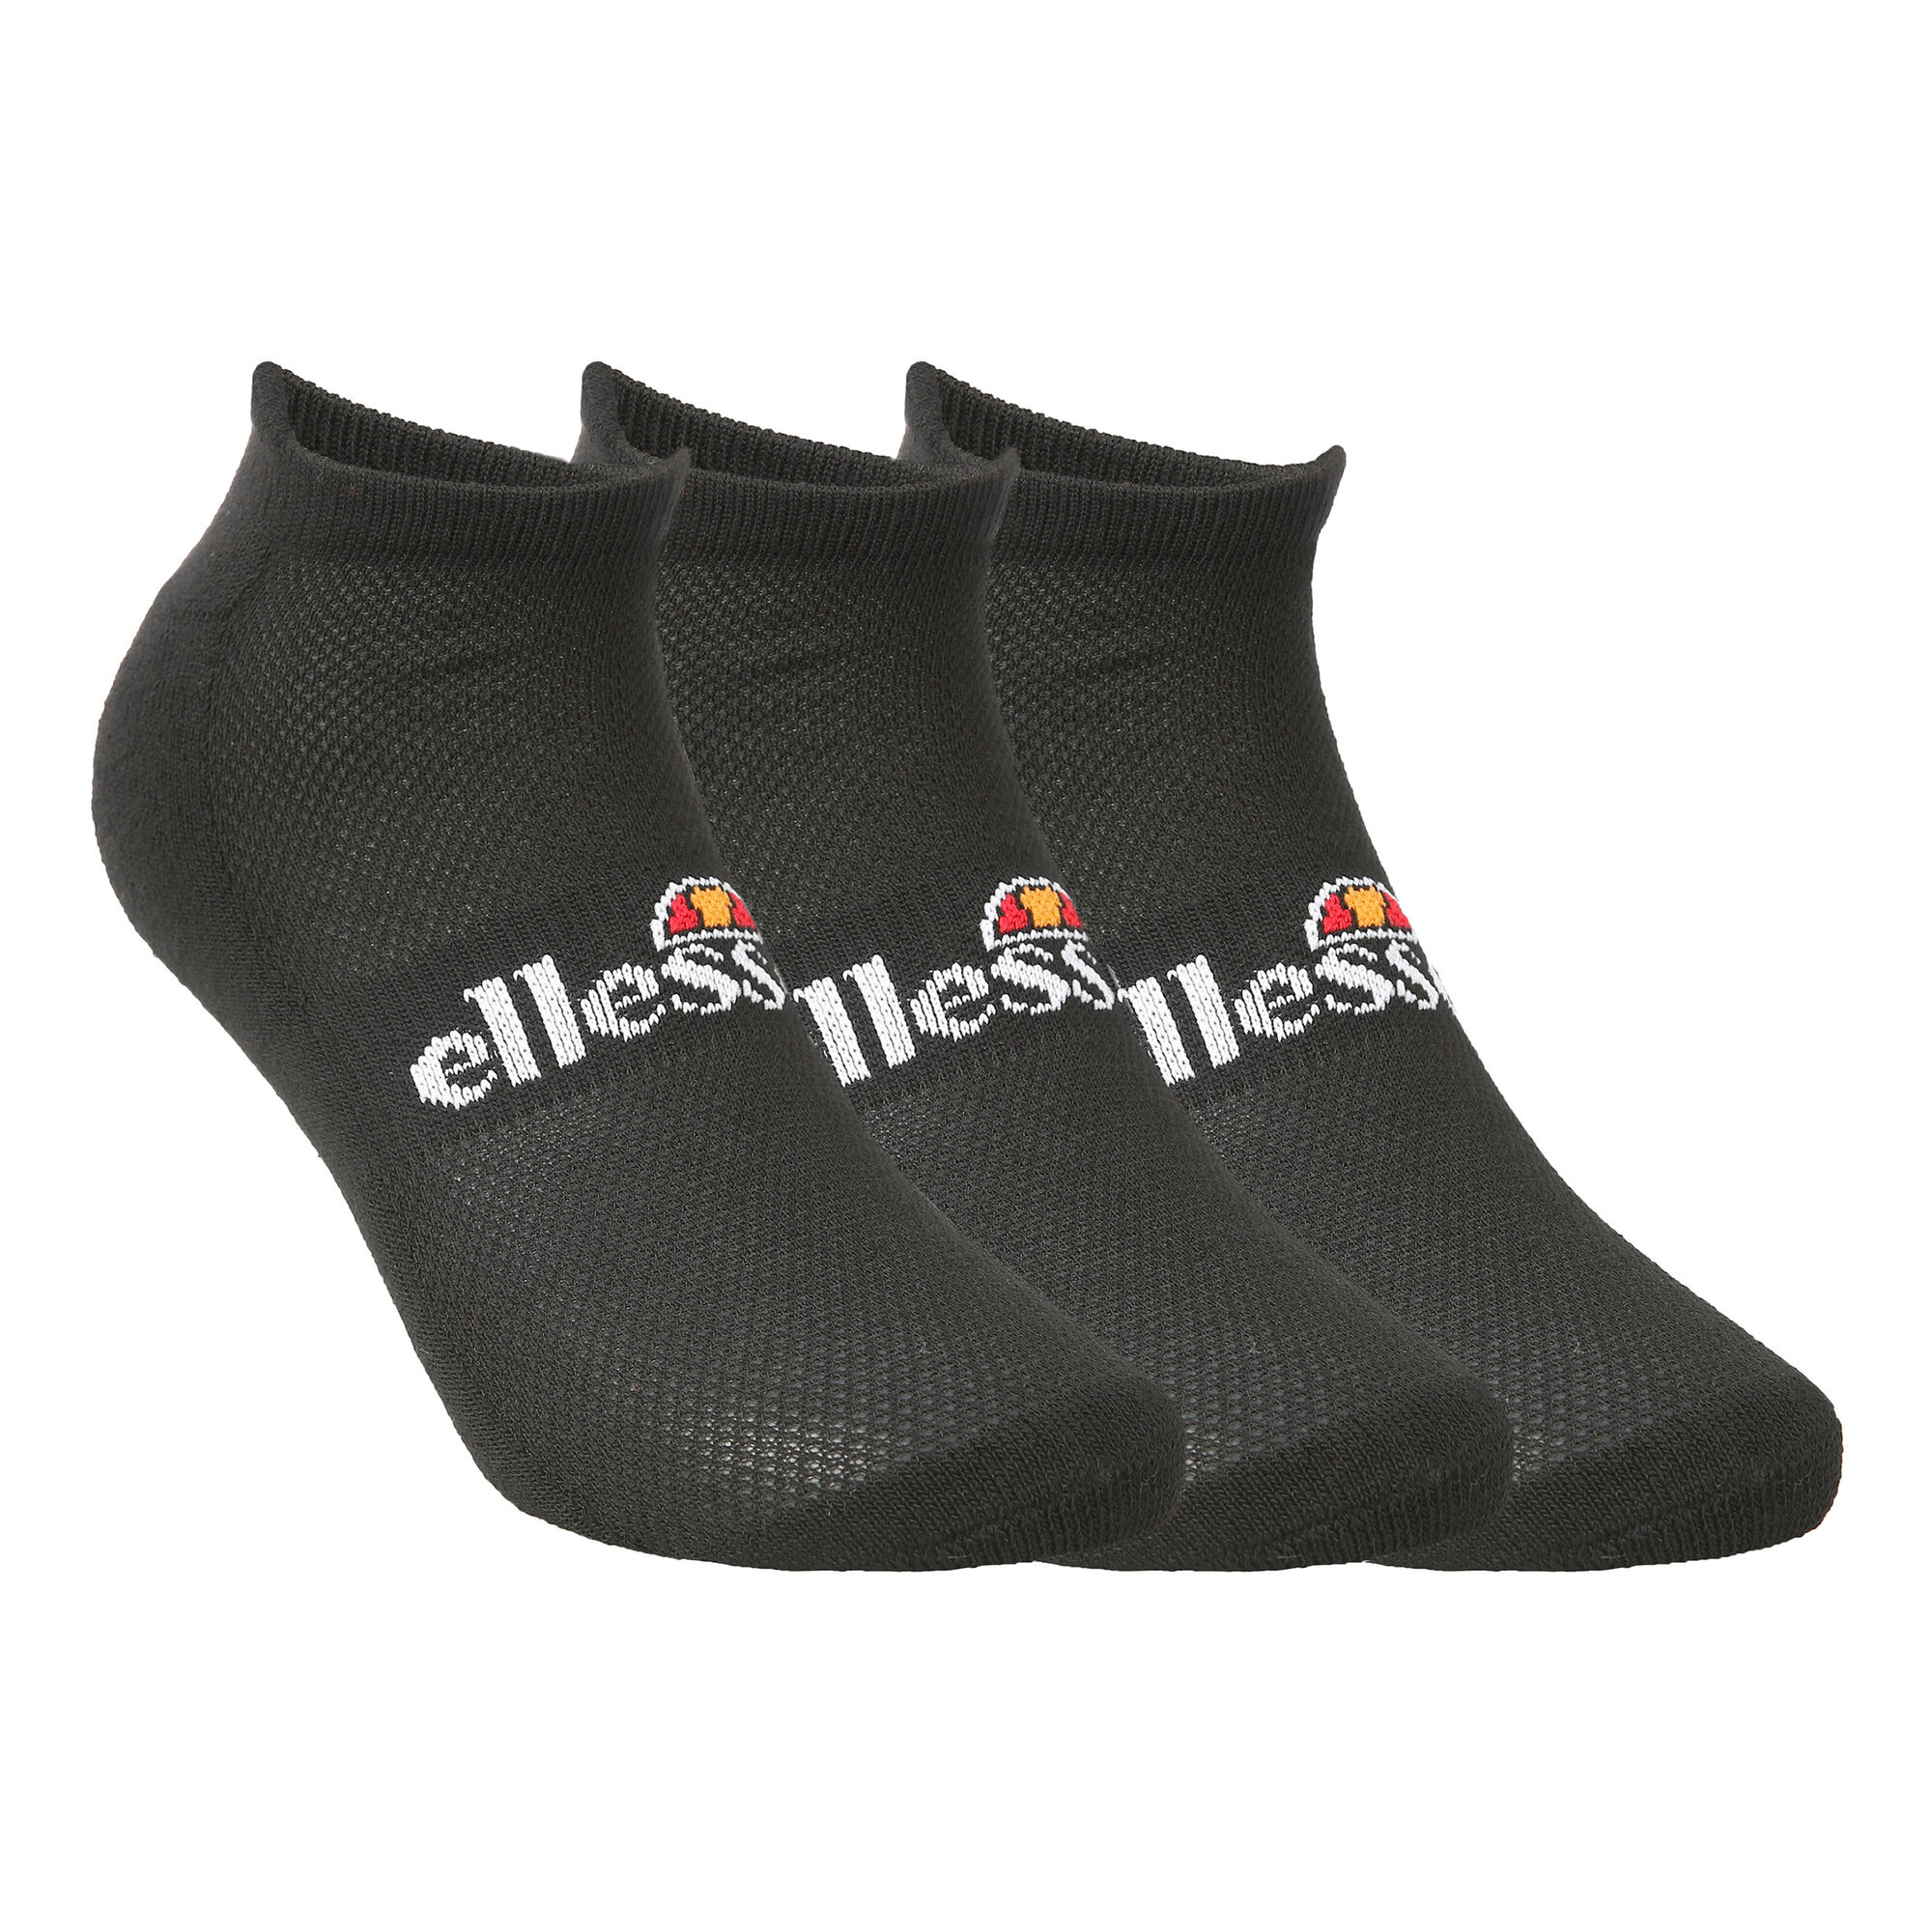 buy Ellesse Dabba Trainer Liner Sports Socks 3 Pack - Black, White ...